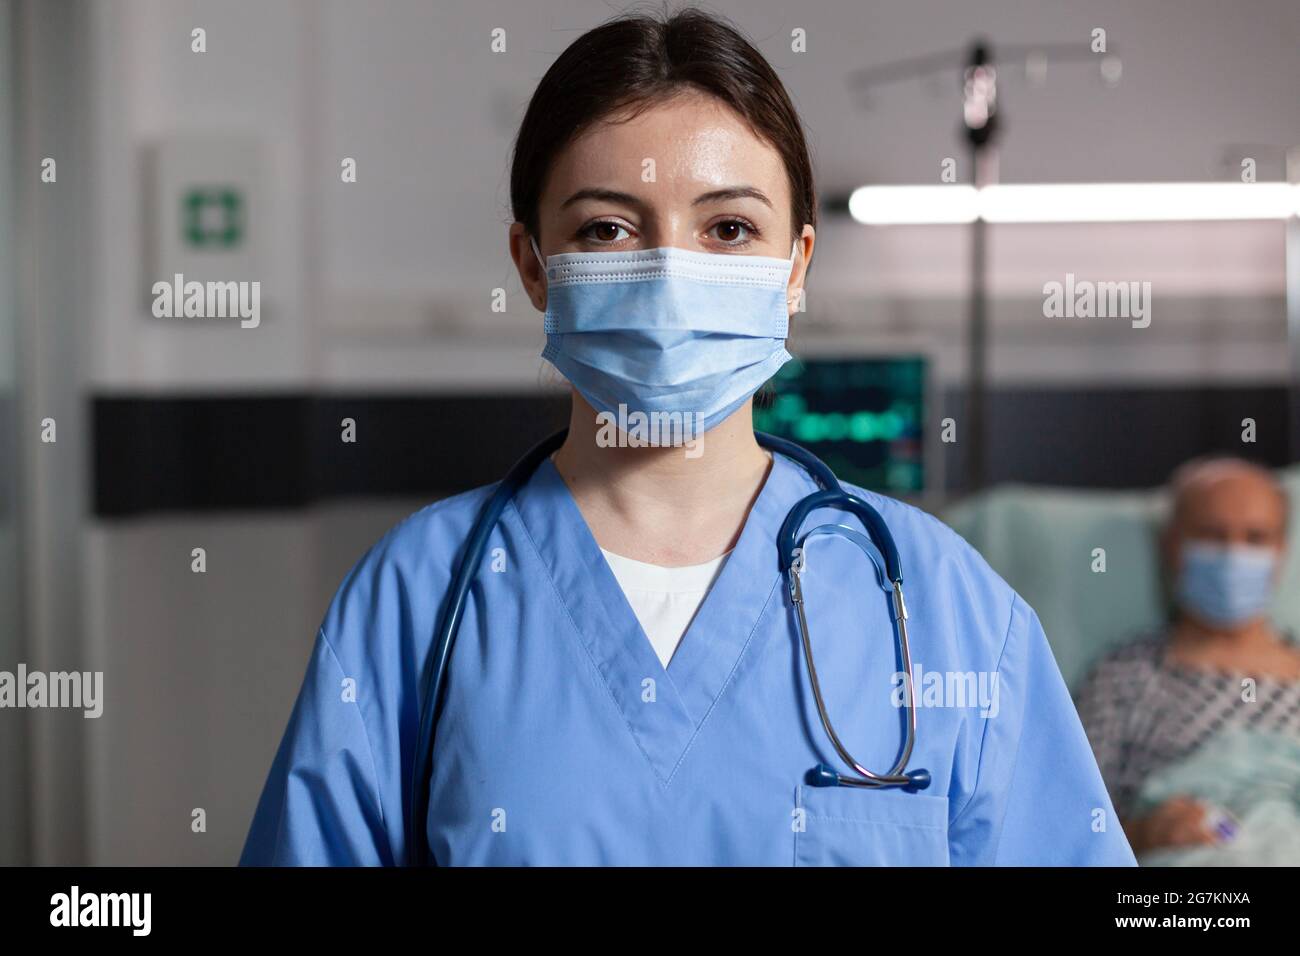 Médecin spécialiste des soins de santé portant un masque de chirurgie dans  la chambre d'hôpital regardant la caméra avec la respiration malade du  patient avec l'aide d'un tube d'oxygène et d'une goutte